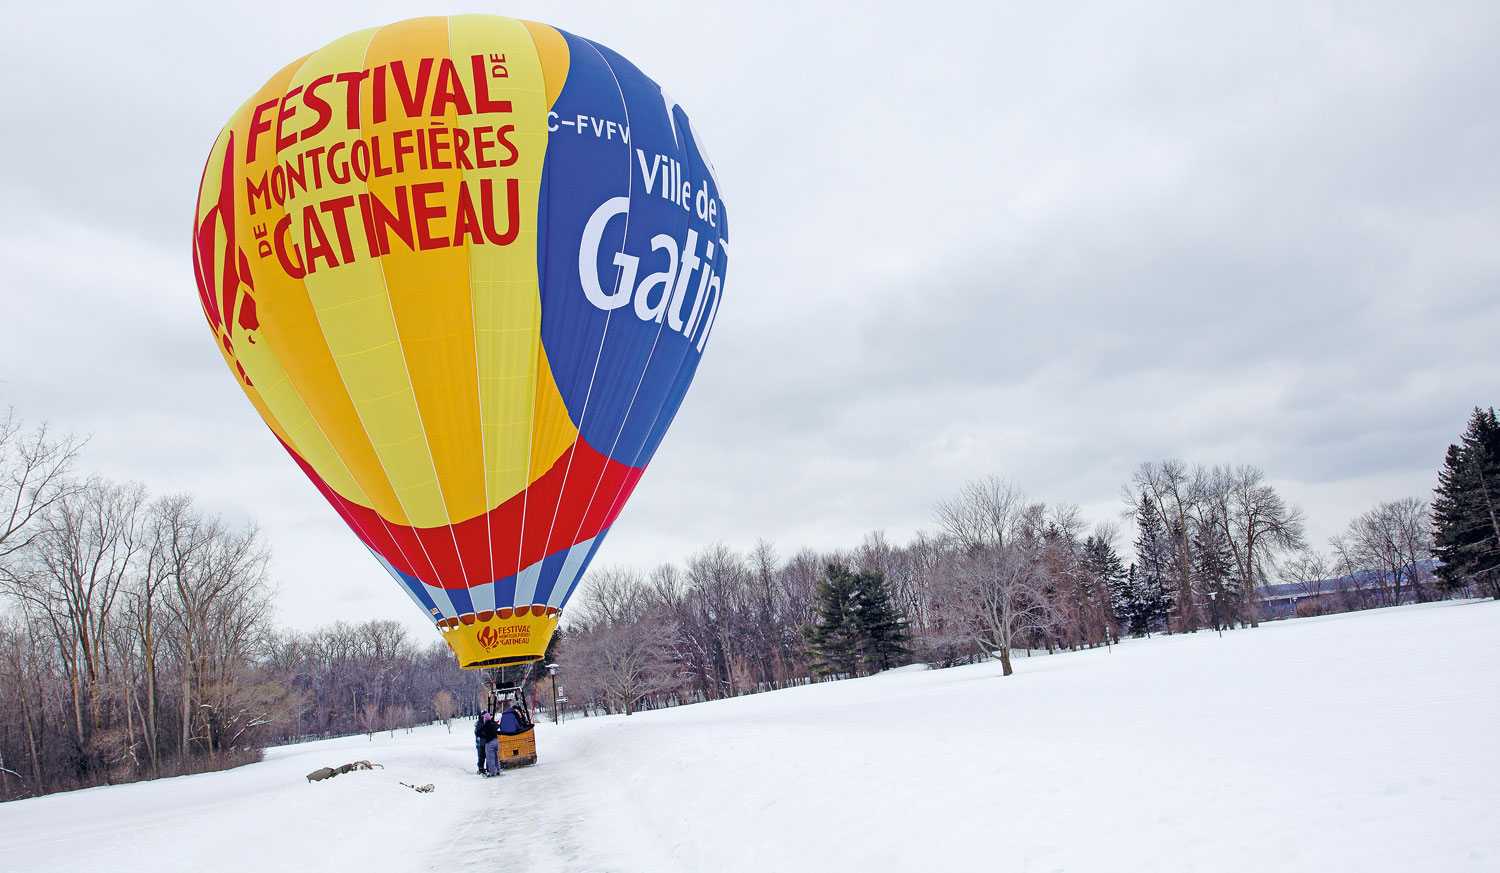 Crédit: Festival de montgolfières de Gatineau